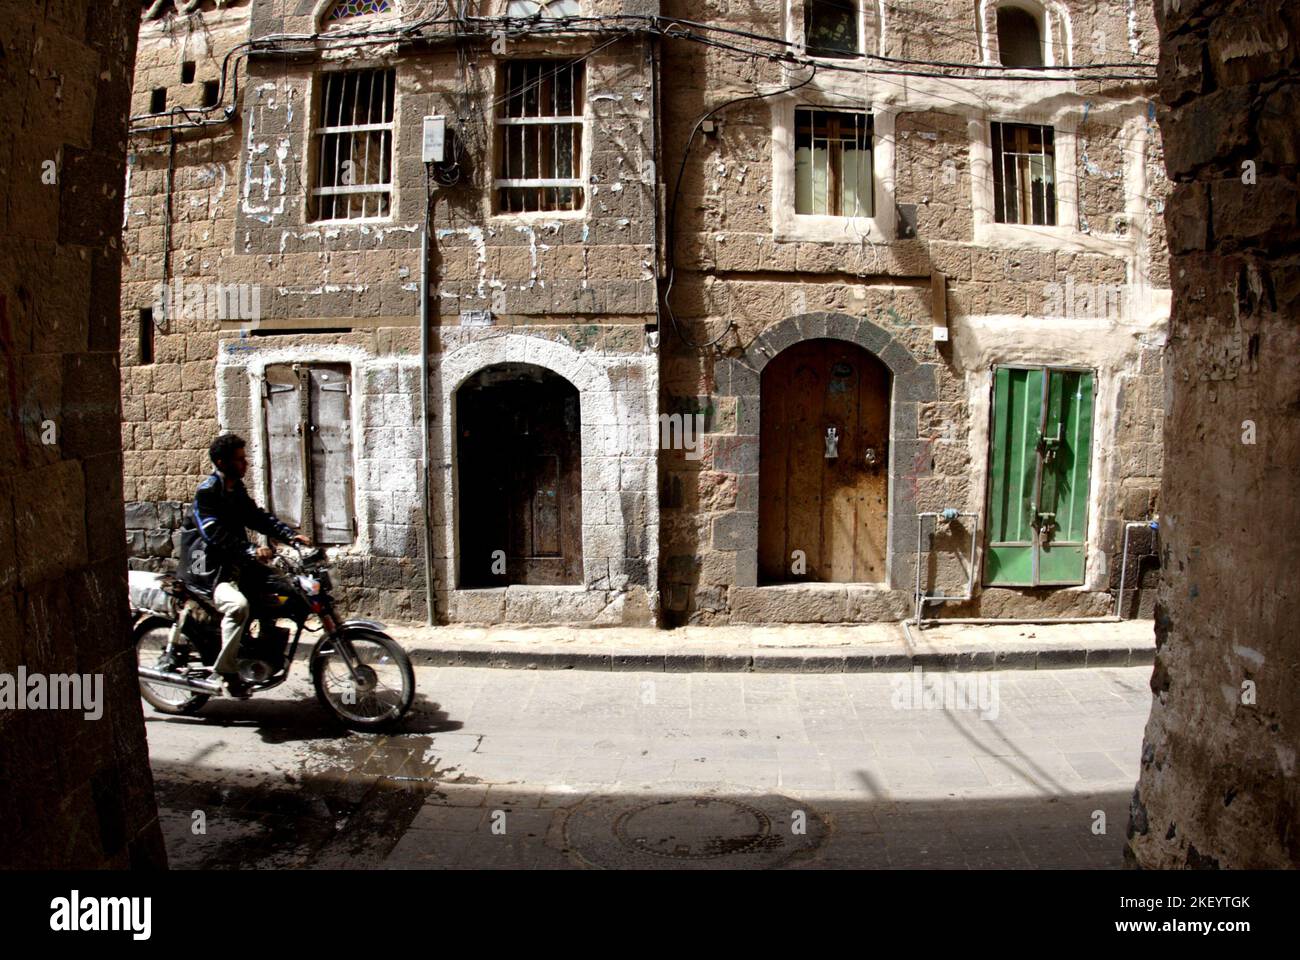 Un motocycliste dans la ruelle de la vieille ville, Sana’a, Yémen Banque D'Images